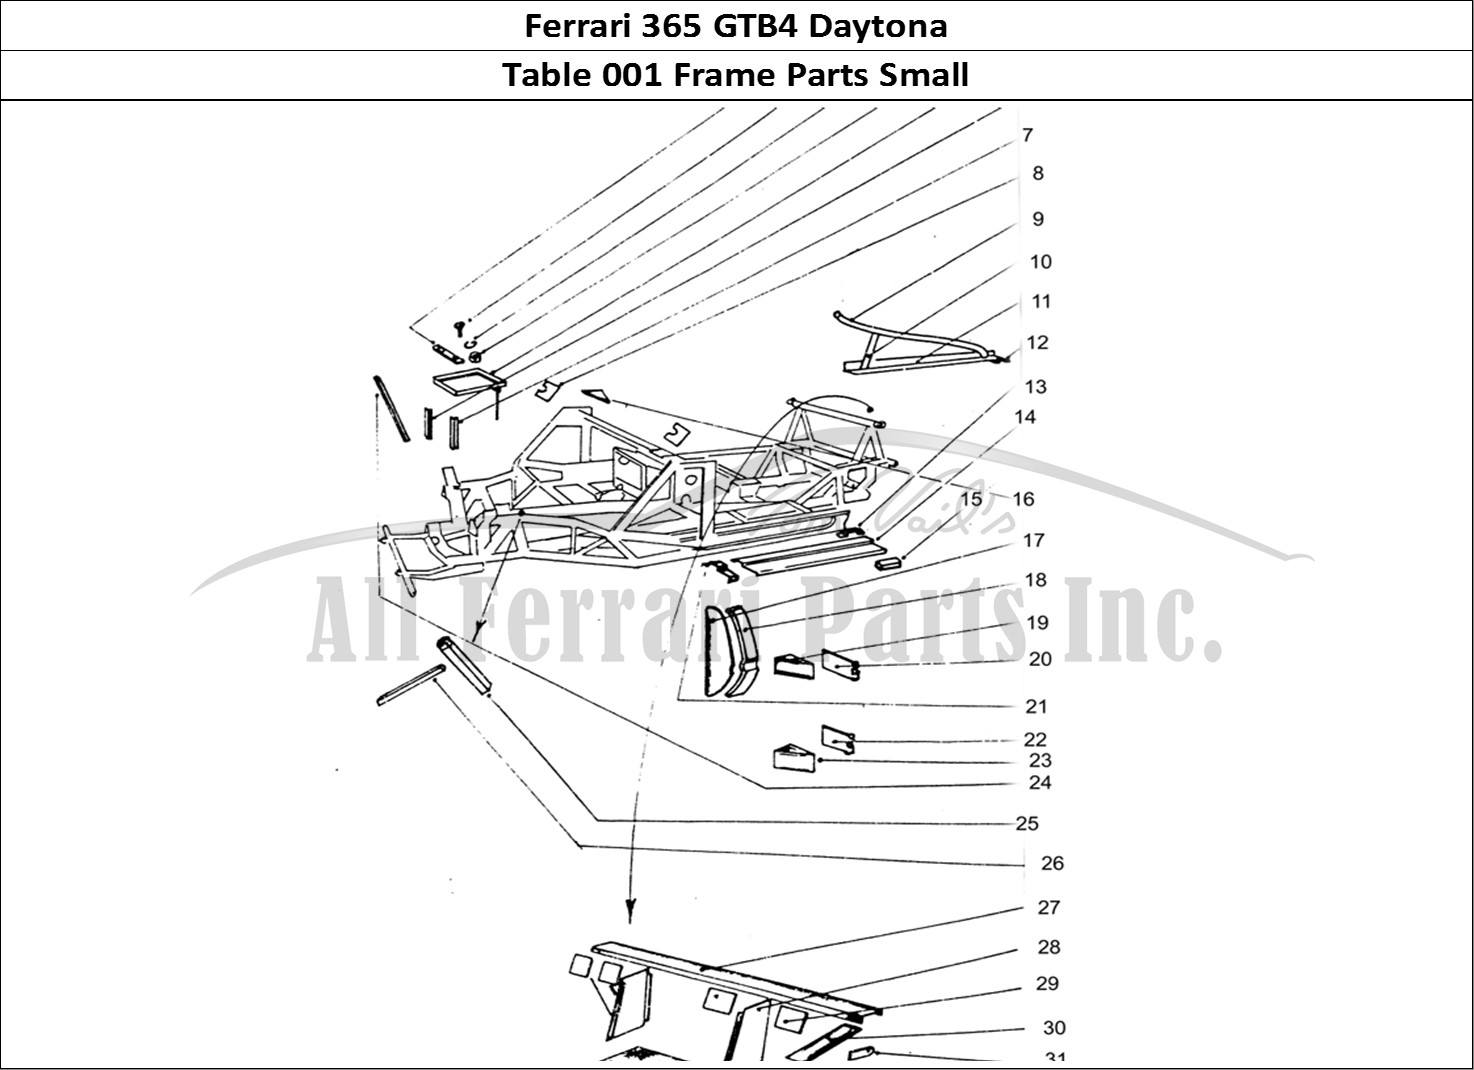 Ferrari Parts Ferrari 365 GTB4 Daytona (Coachwork) Page 001 Inner panels